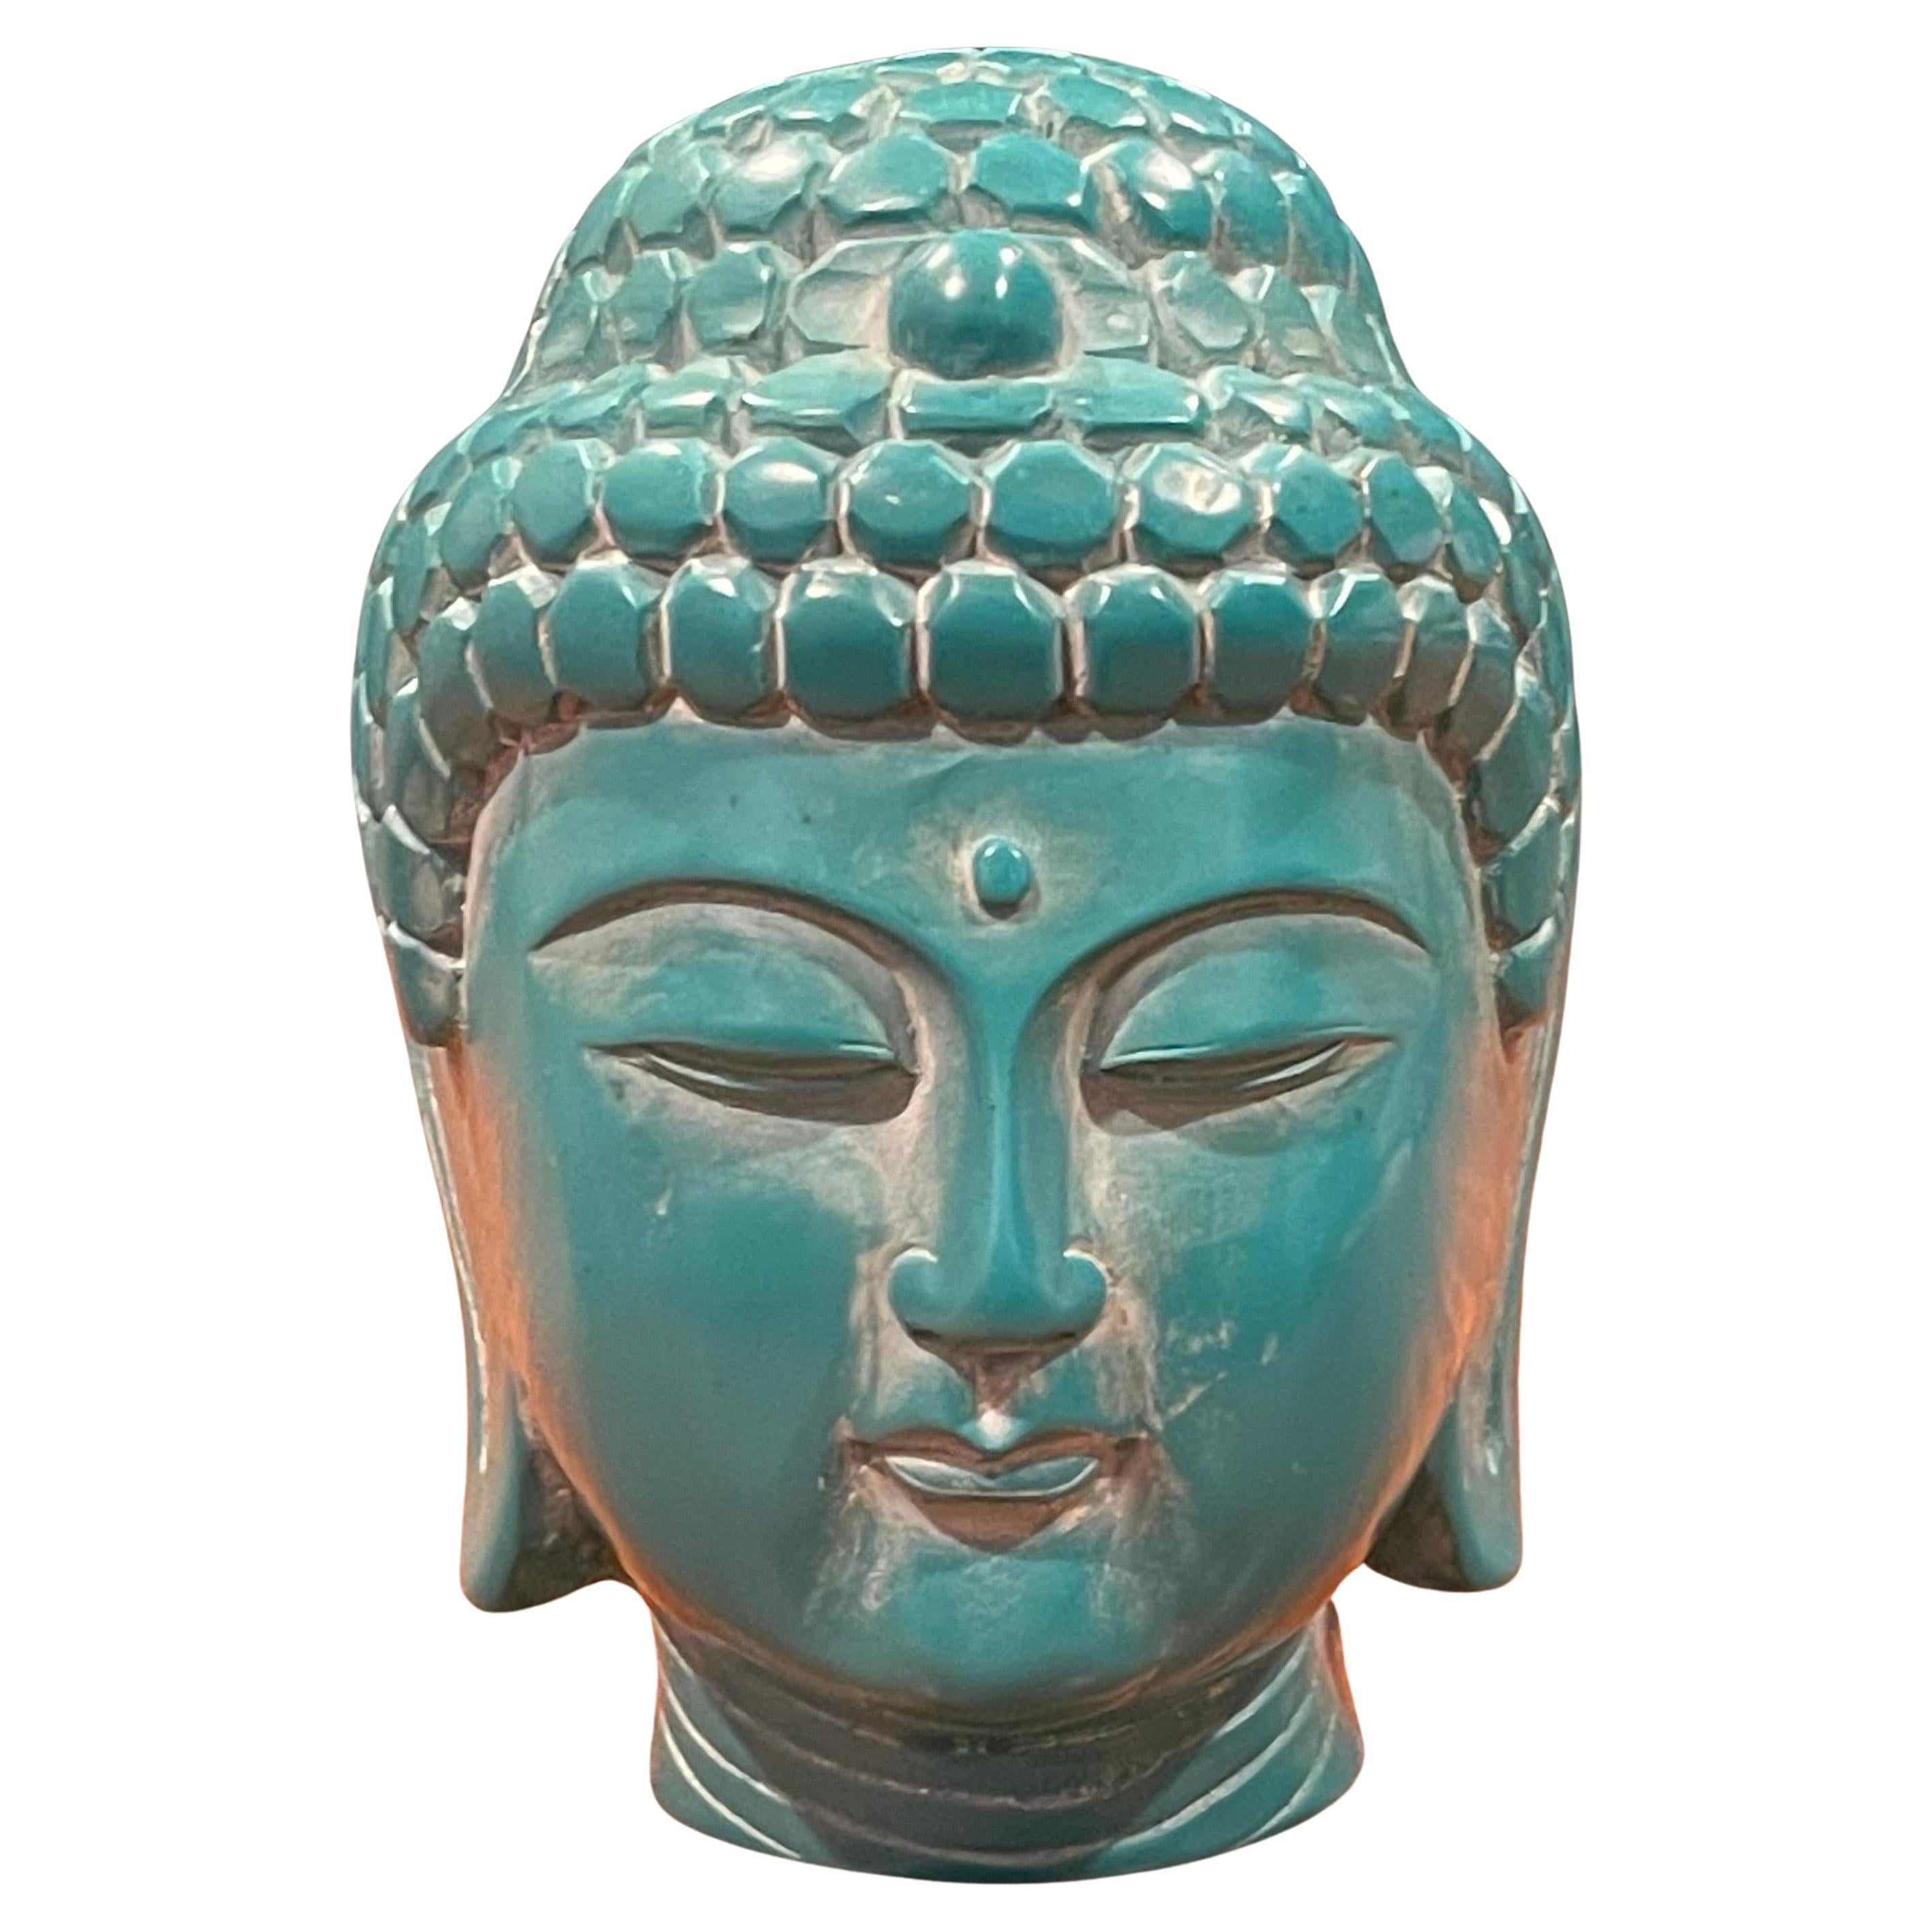 Ein sehr cooler handgeschnitzter Vintage-Buddha-Kopf aus tealfarbenem Bakelit auf einem Palisanderholzständer, circa 1970er Jahre. Die geschnitzte Figur ist eine Darstellung von Gautama Buddha, auch bekannt als der Erleuchtete oder Erwachte.  Das